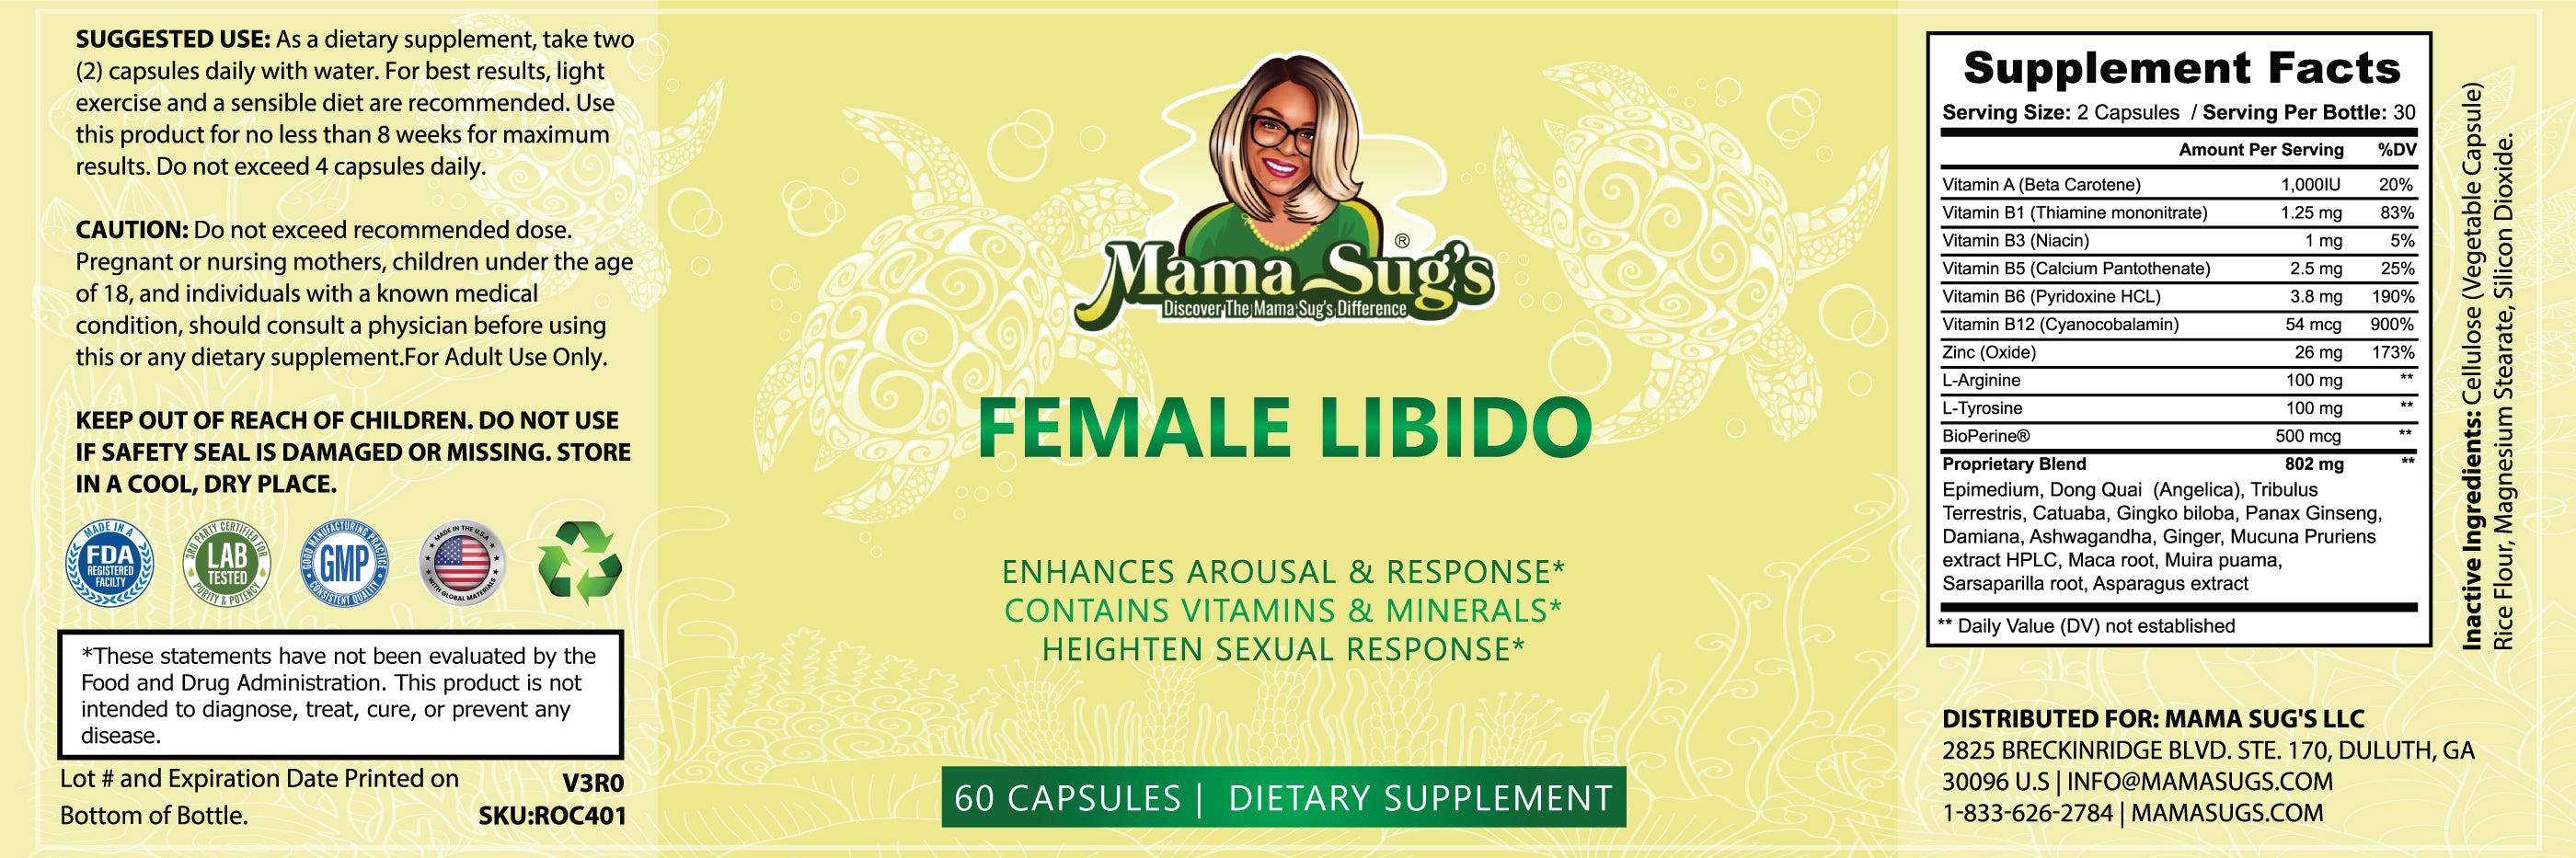 Female Libido